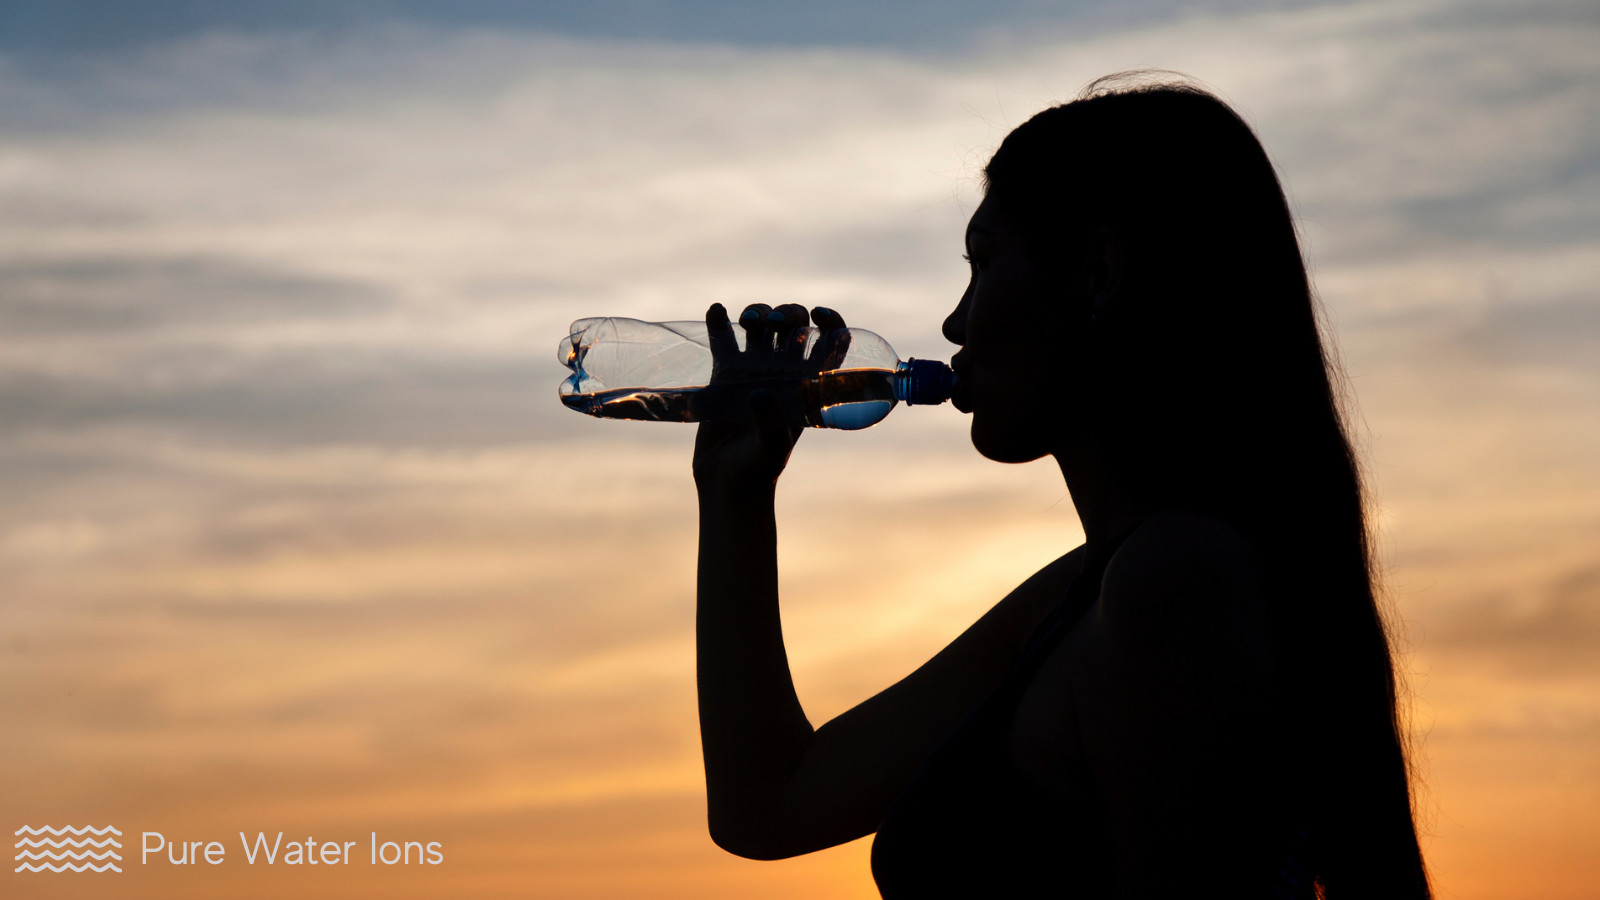 woman drinking diy alkaline water from a bottle